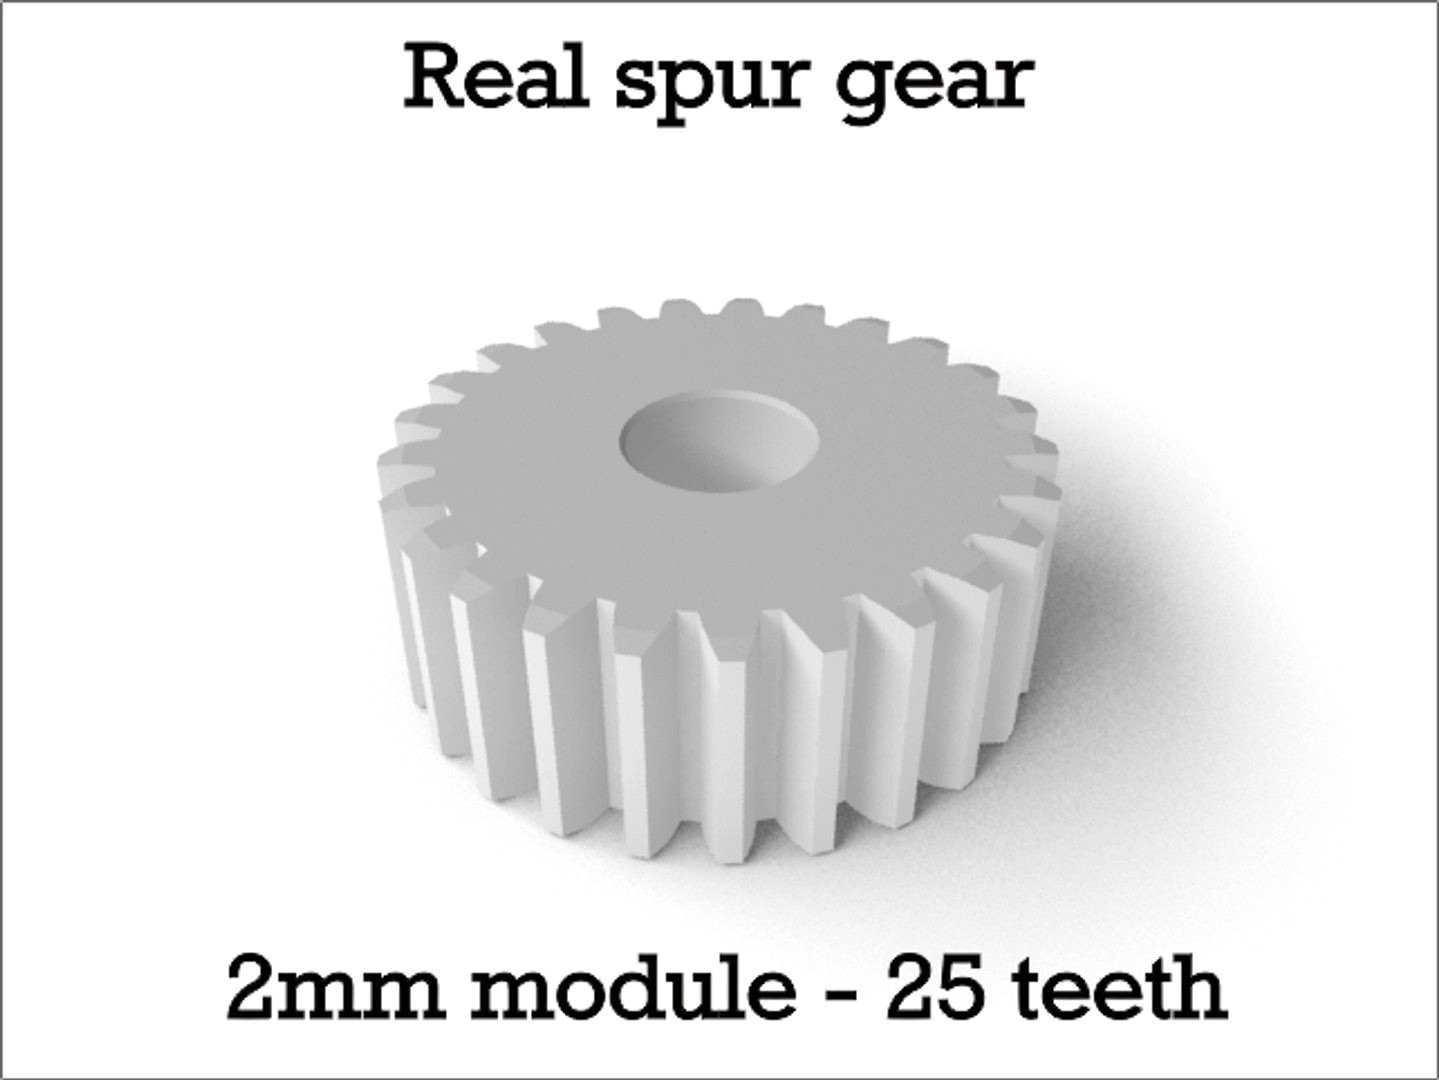 Real spur gear 2mm module - 25 teeth